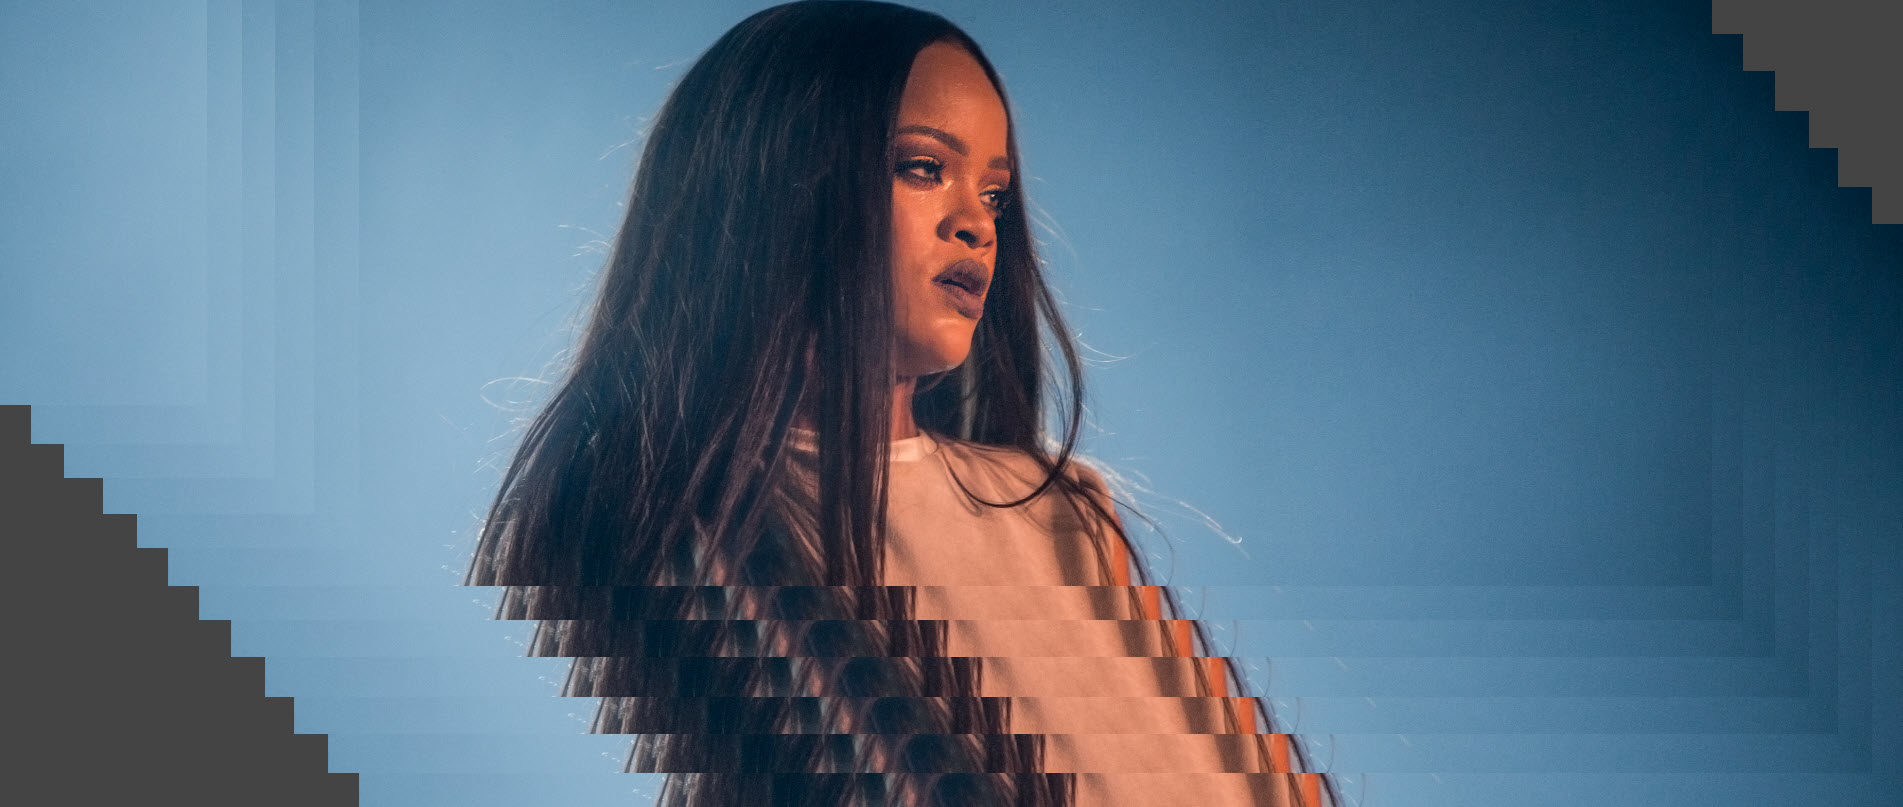 Rihanna header image